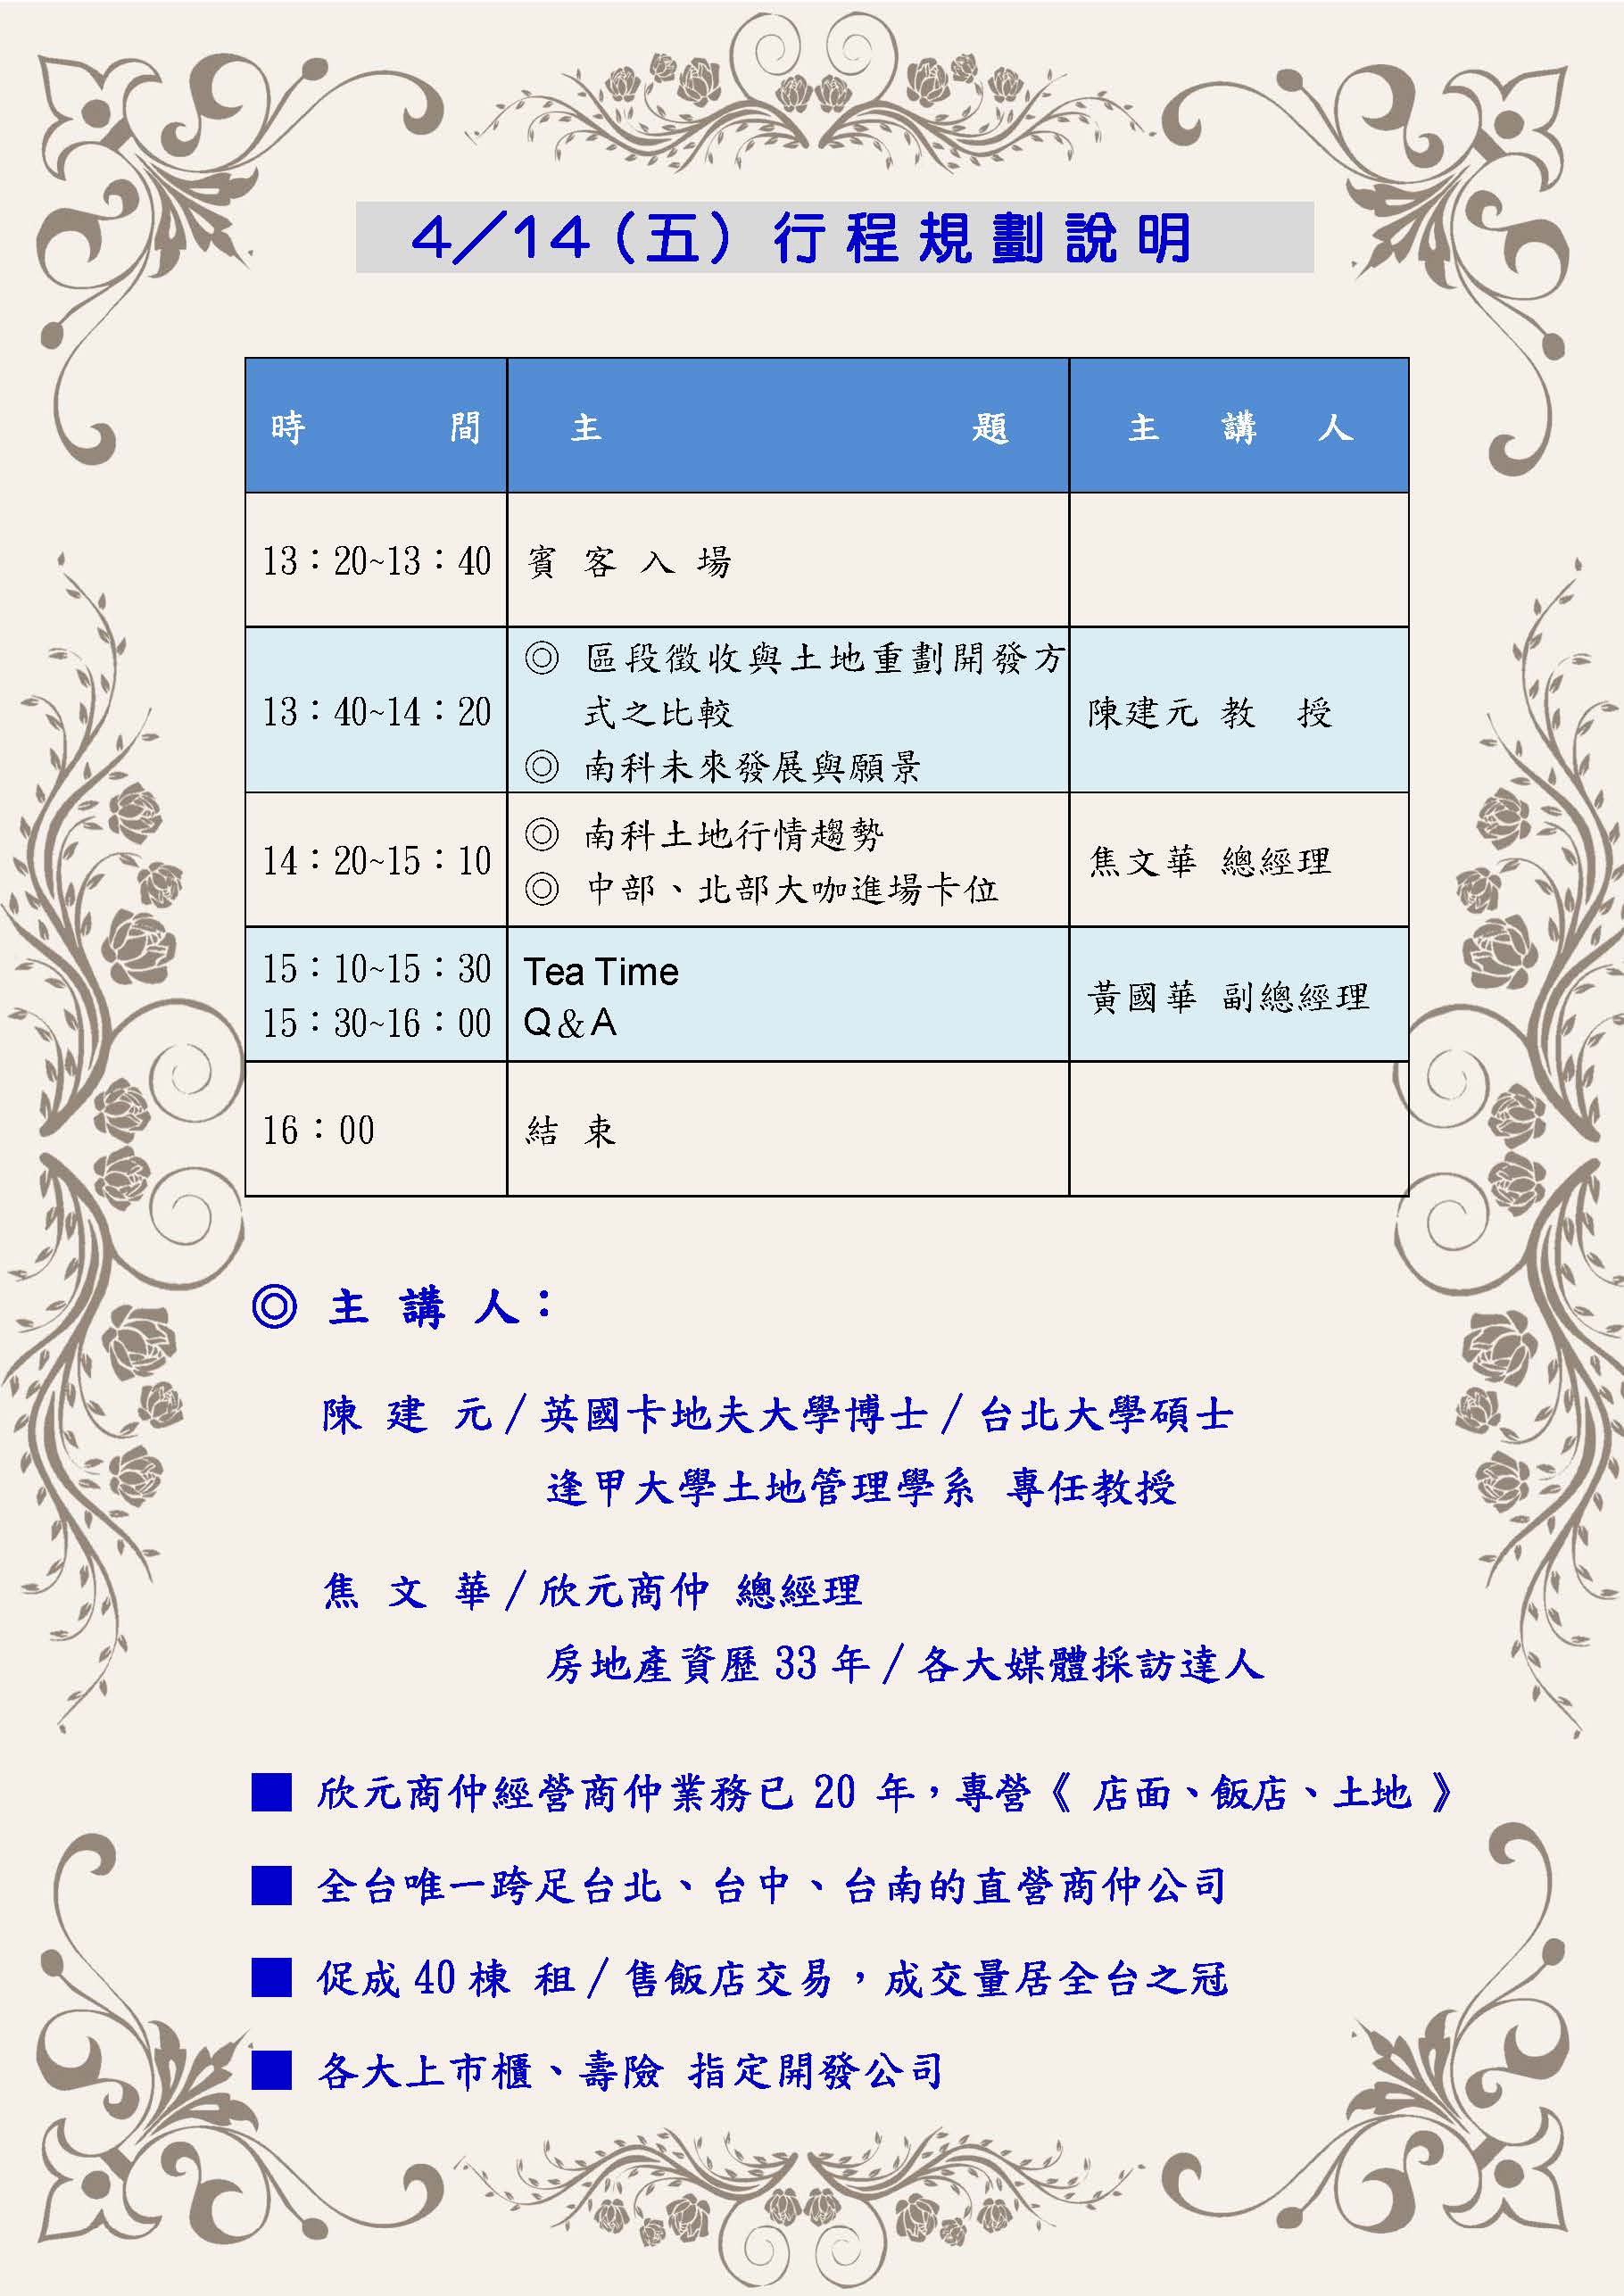 4月14日（五）台中福華大飯店 第三場南科投資說明會（台中場） 會議議程說明